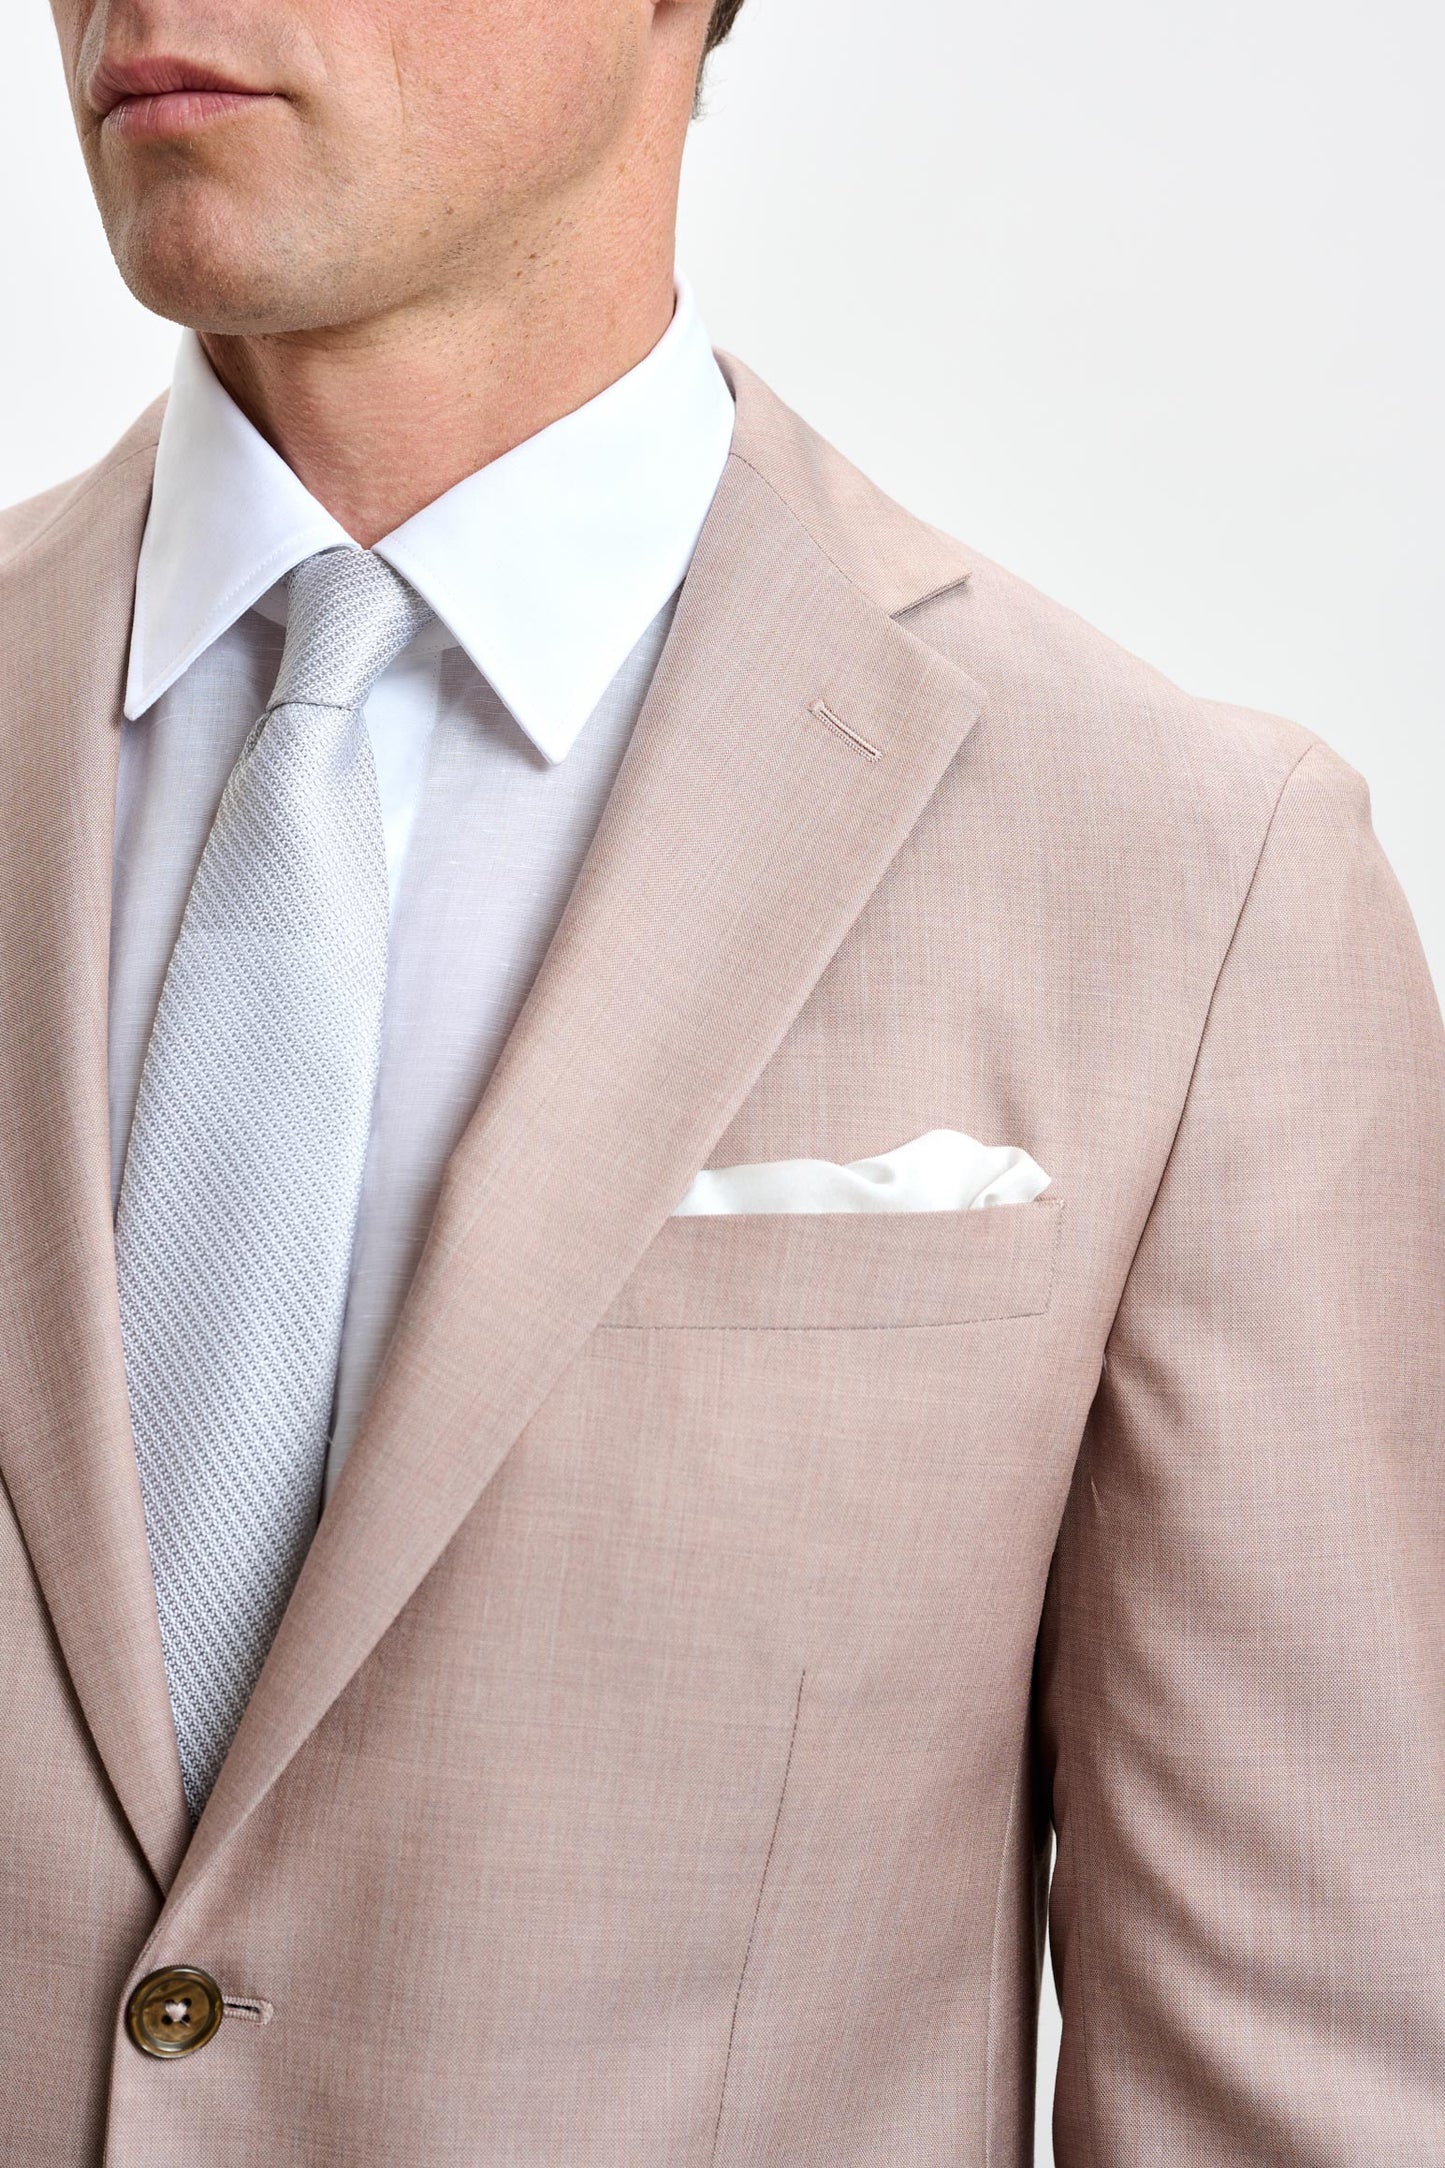 Kenton-Anzug in elegantem, schlichtem Beige